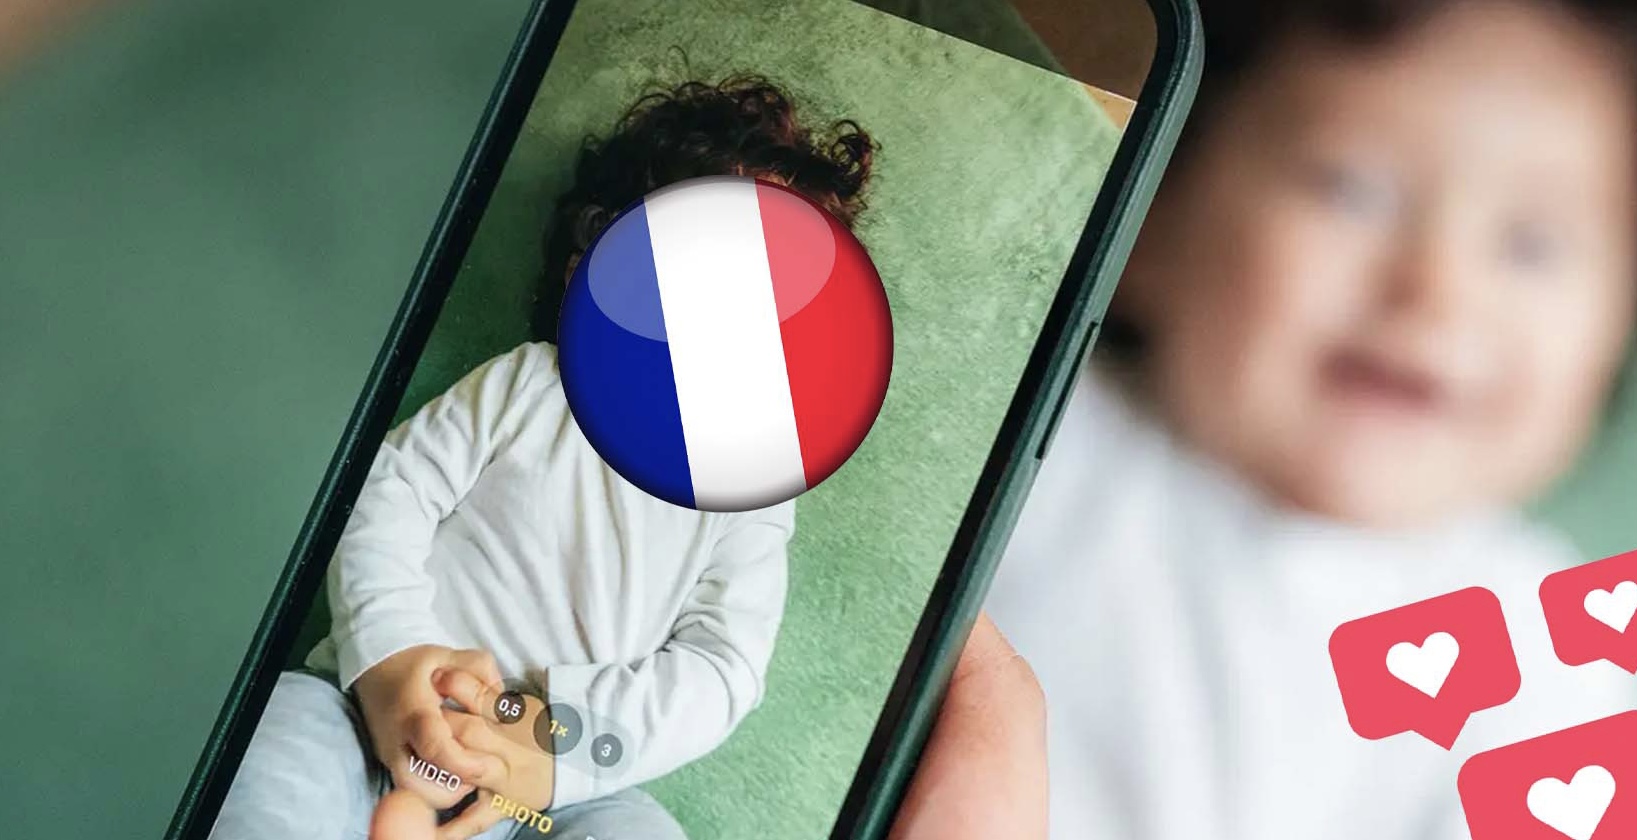 Prindërve në Francë do t’u ndalohet të postojnë fotot e fëmijëve të tyre në rrjetet sociale